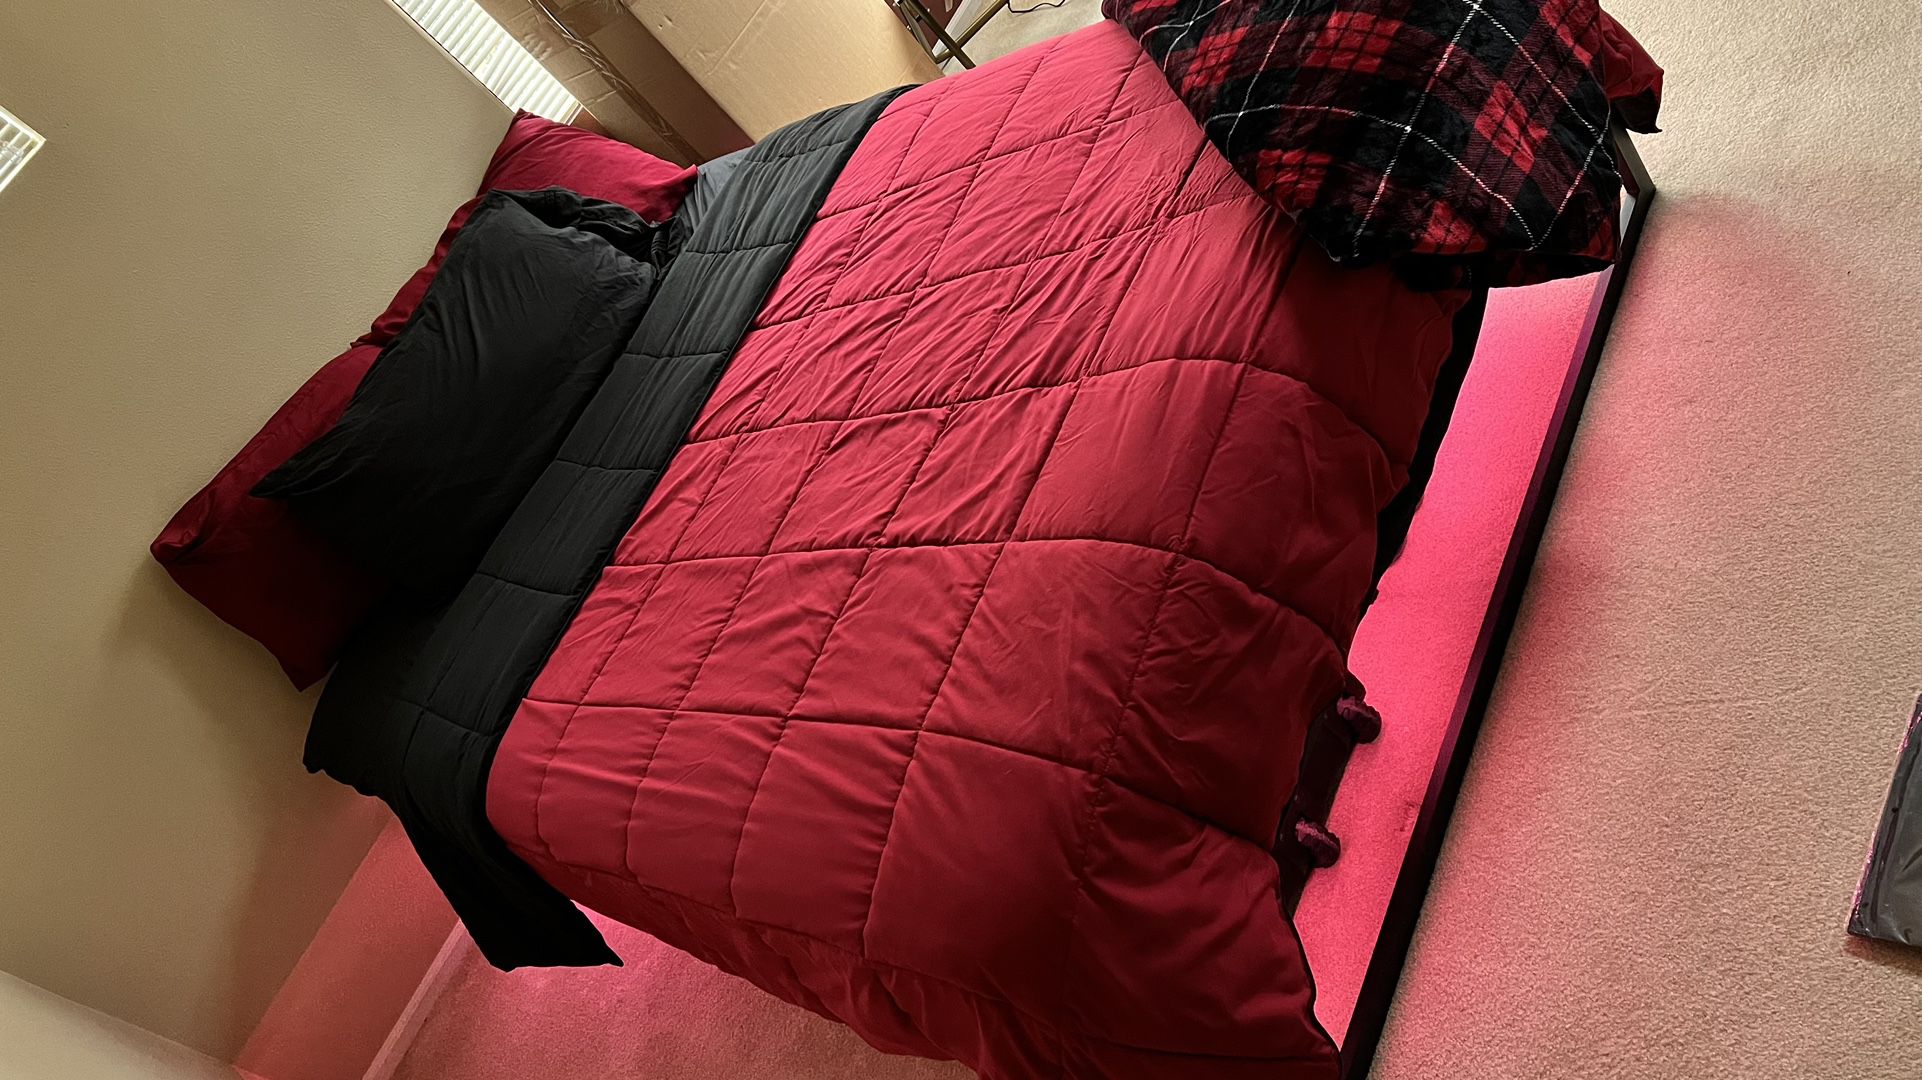 buy a queen size mattress